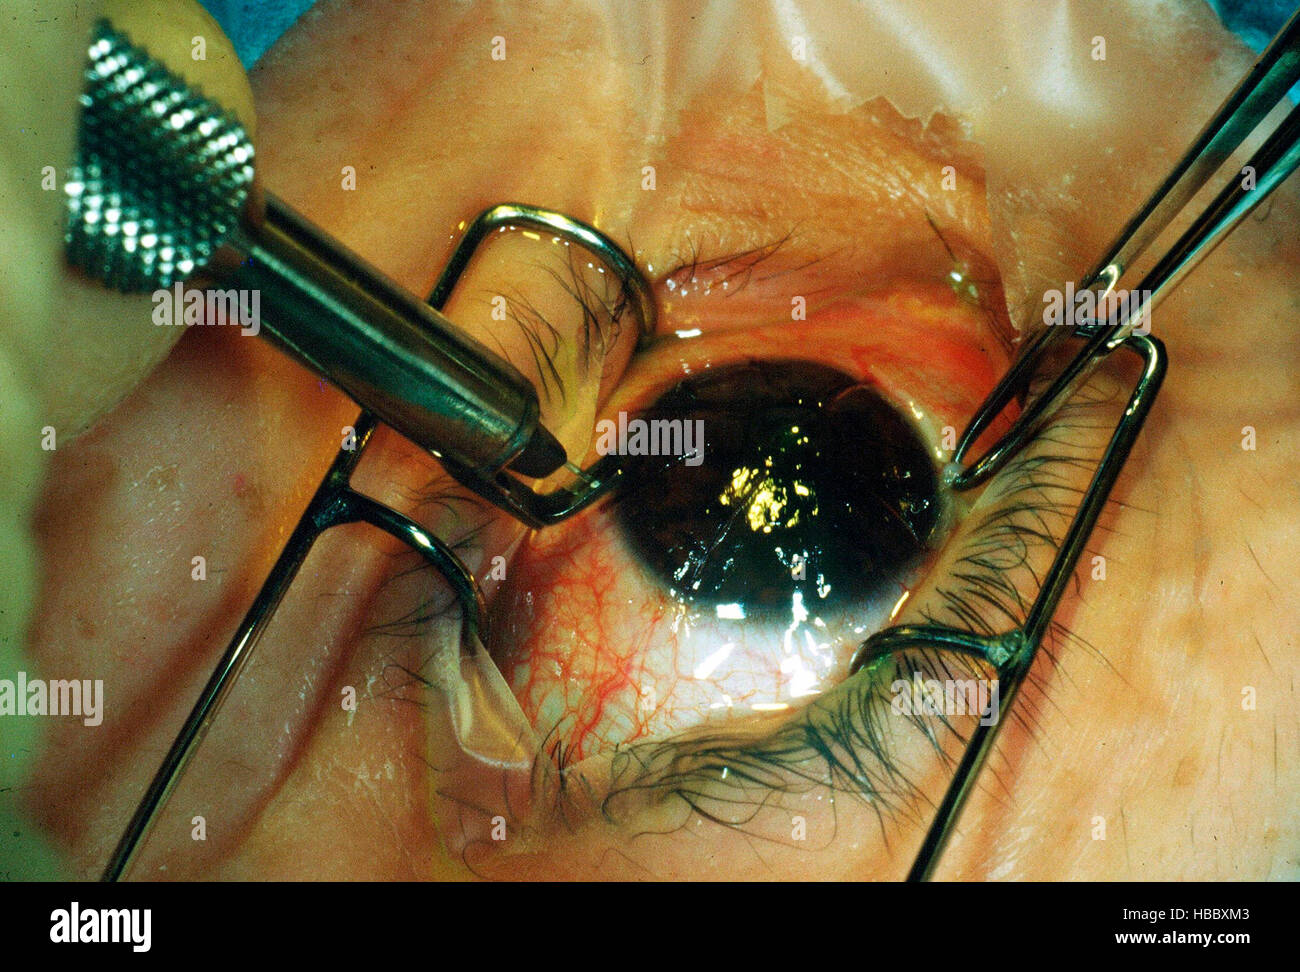 La chirurgia oculare, la cheratotomia radiale operazione agli occhi per correggere la vista Breve, 1985 Foto Stock